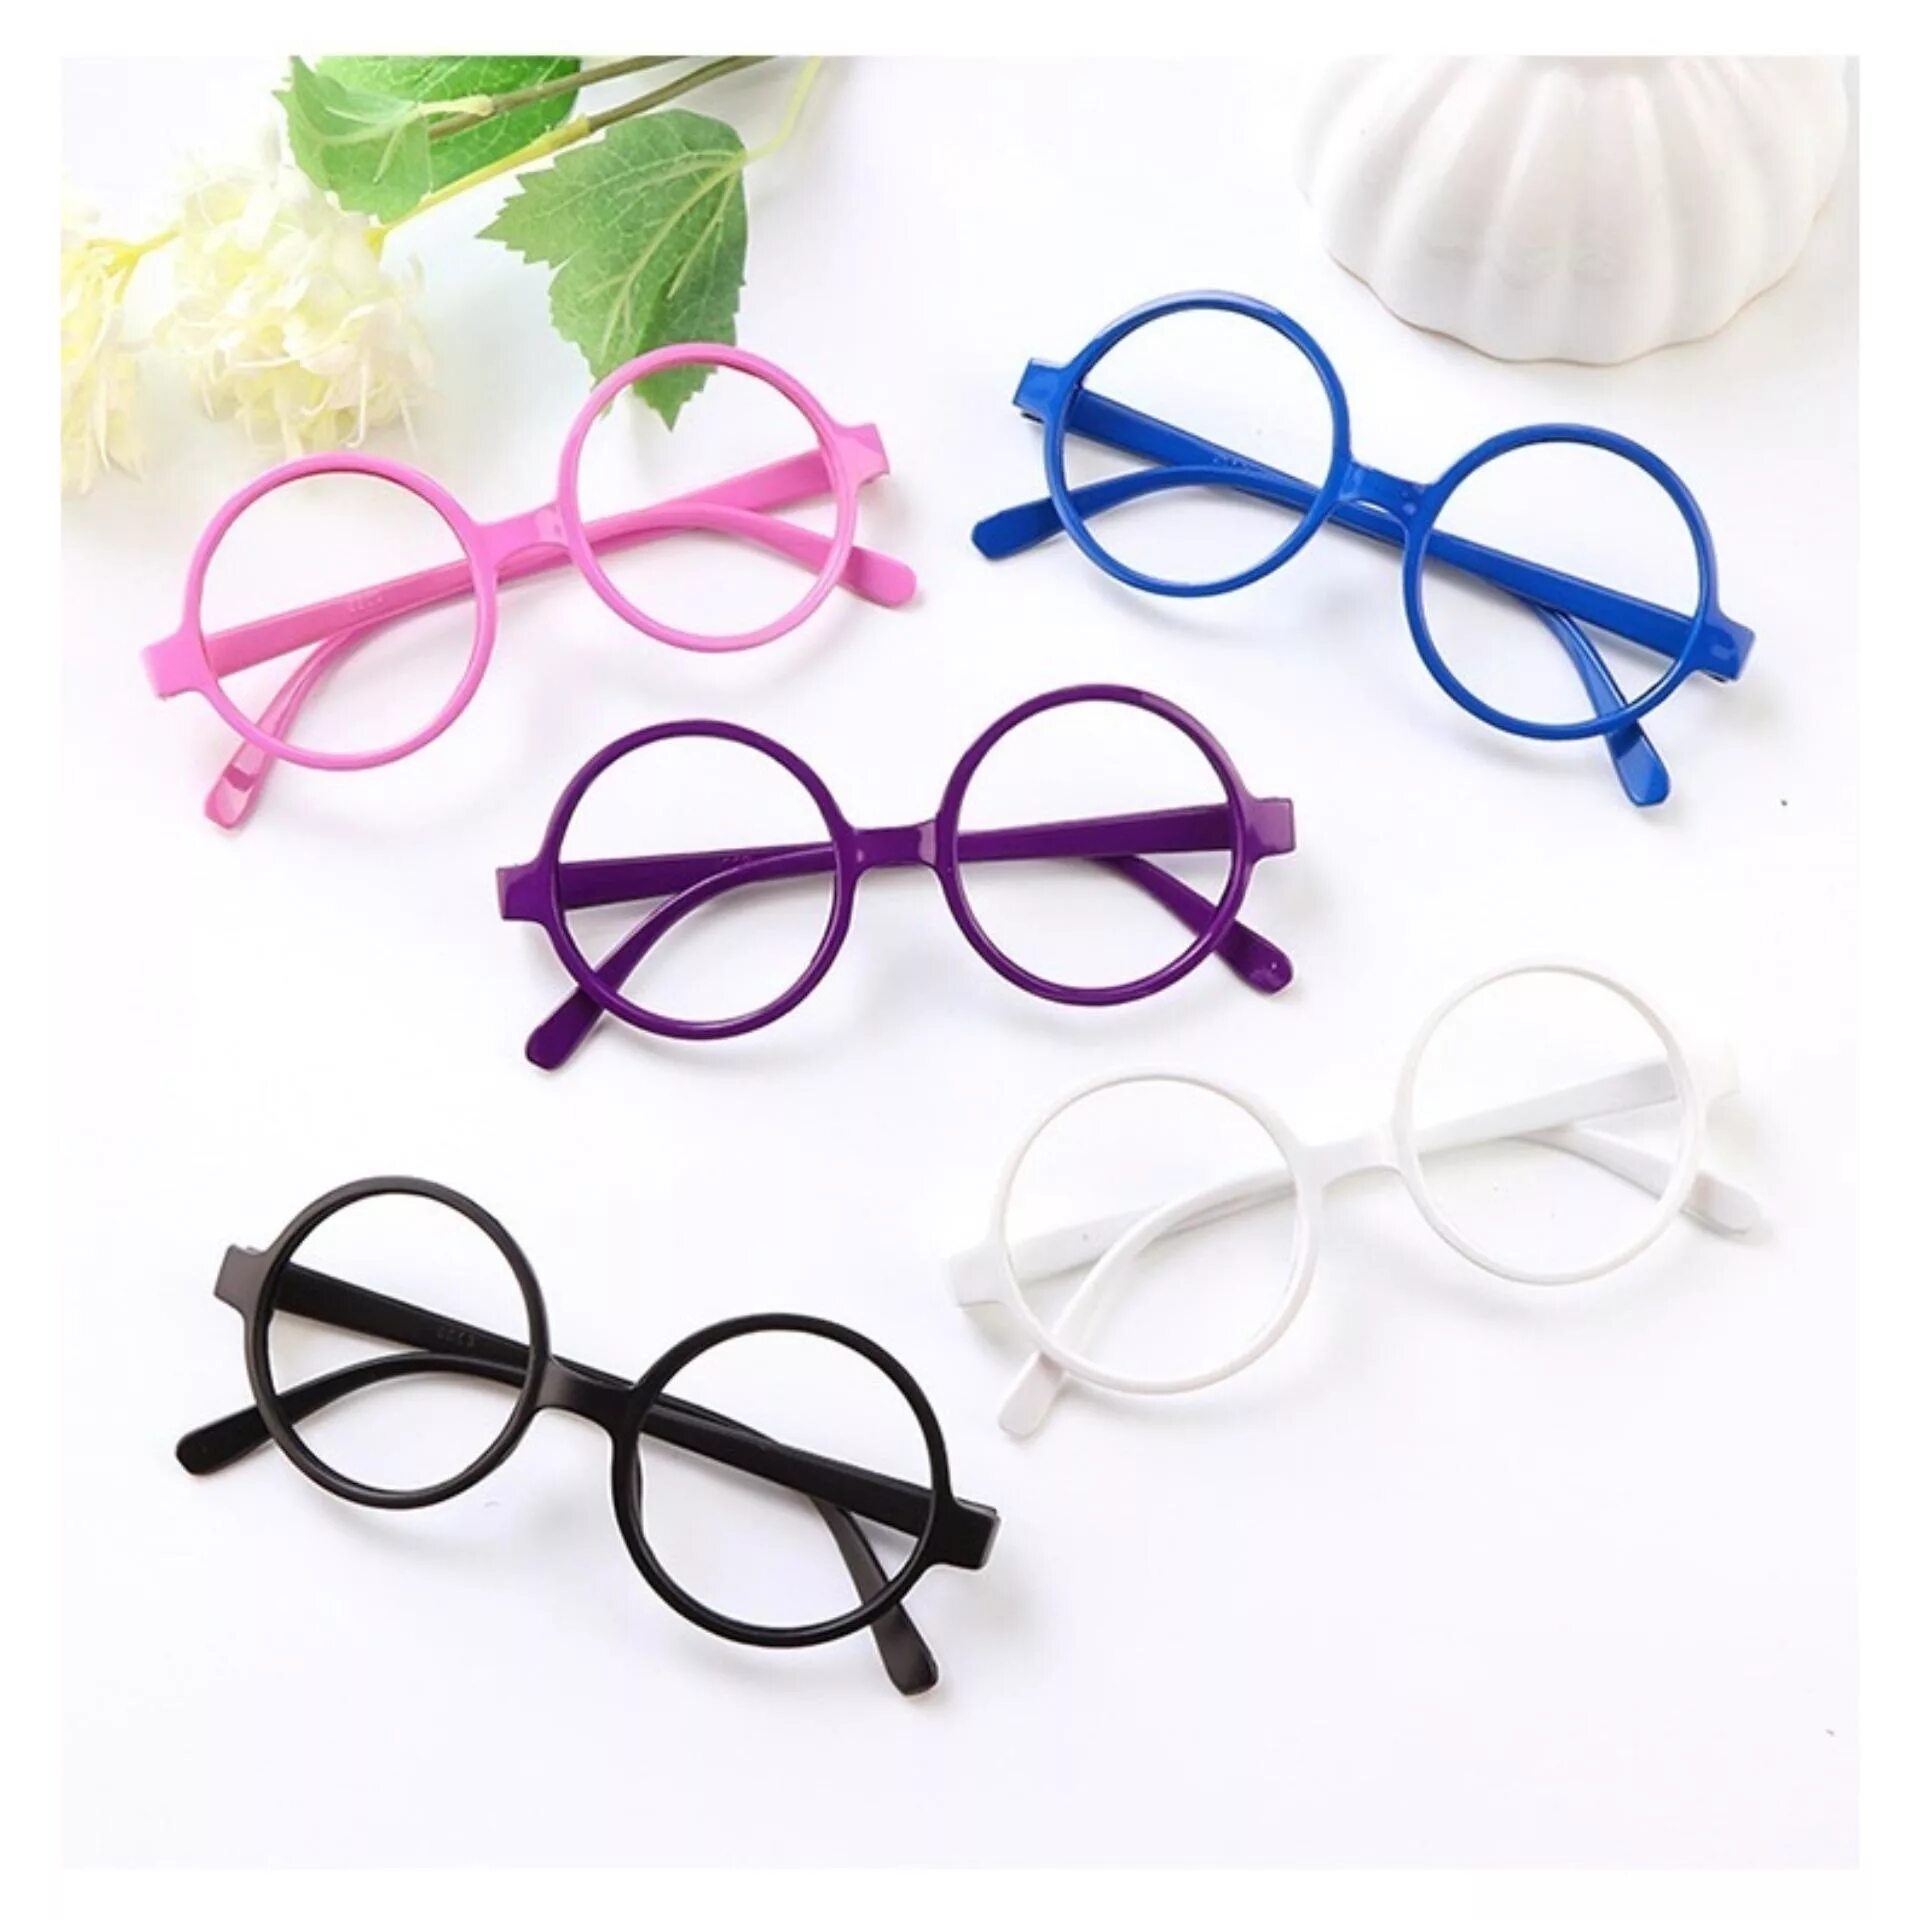 Пластмассовые очки. Пластиковые очки для зрения. Пластмассовая оправа для очков. Круглые пластиковые очки для зрения.